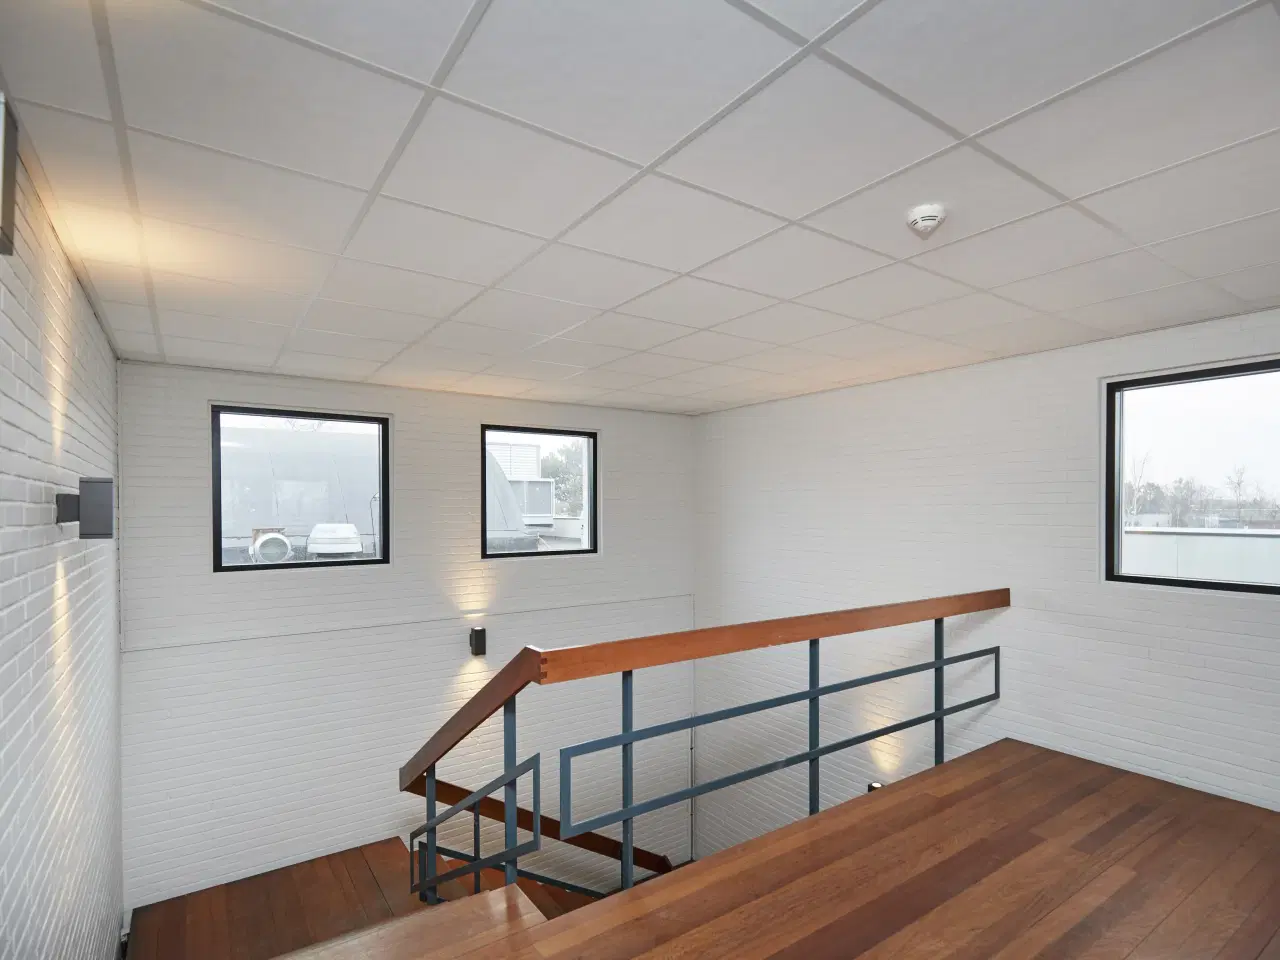 Billede 4 - Kontor / lager på 33 m² udlejes i Herlev